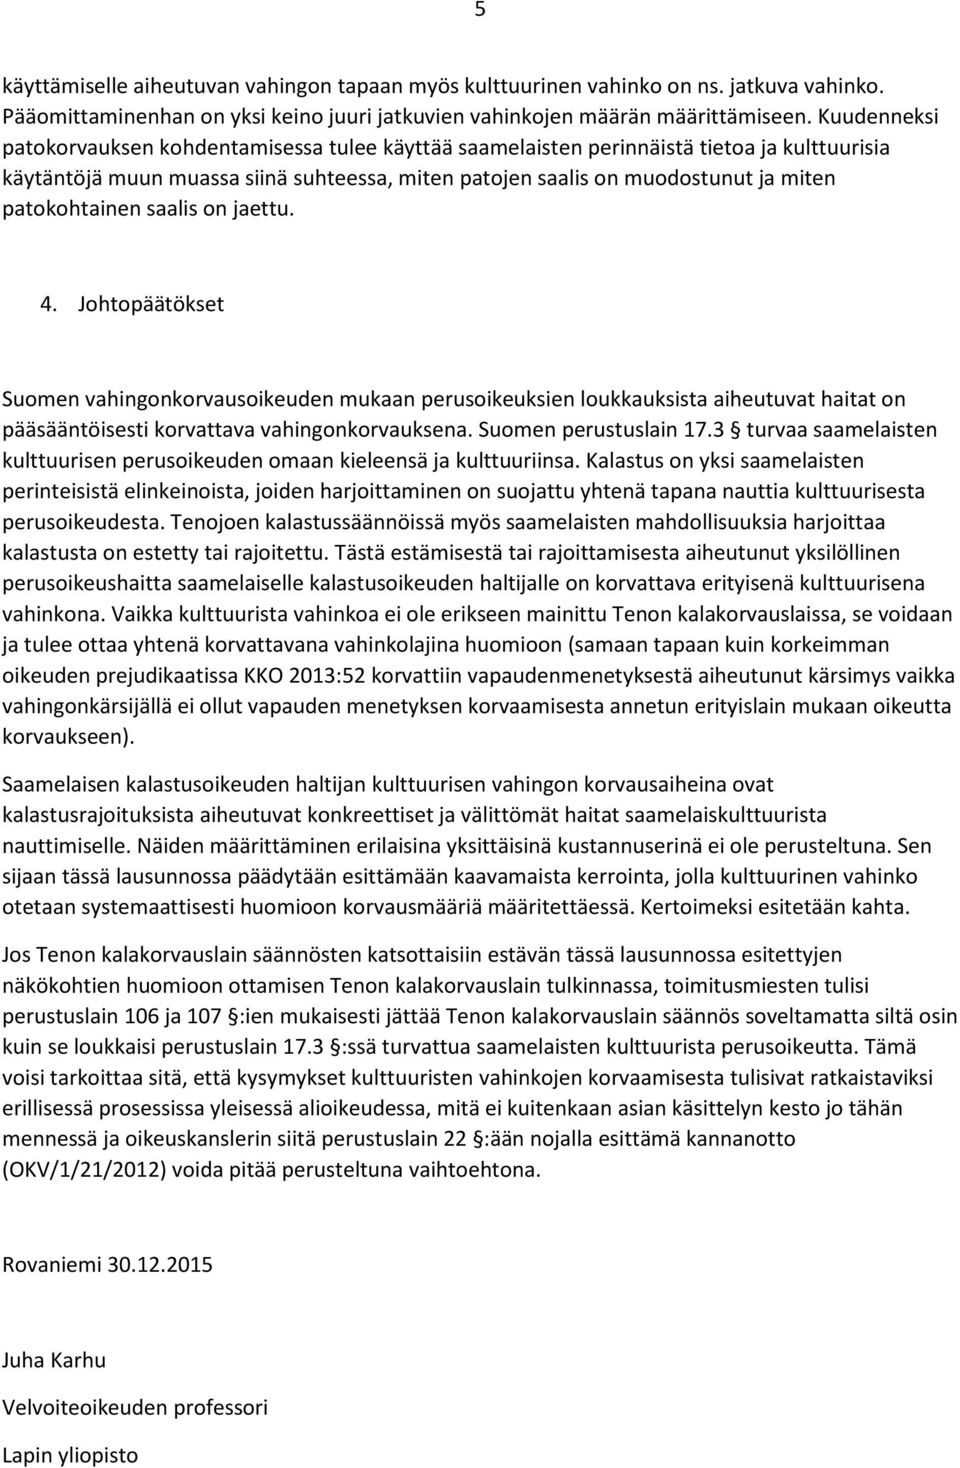 patokohtainen saalis on jaettu. 4. Johtopäätökset Suomen vahingonkorvausoikeuden mukaan perusoikeuksien loukkauksista aiheutuvat haitat on pääsääntöisesti korvattava vahingonkorvauksena.